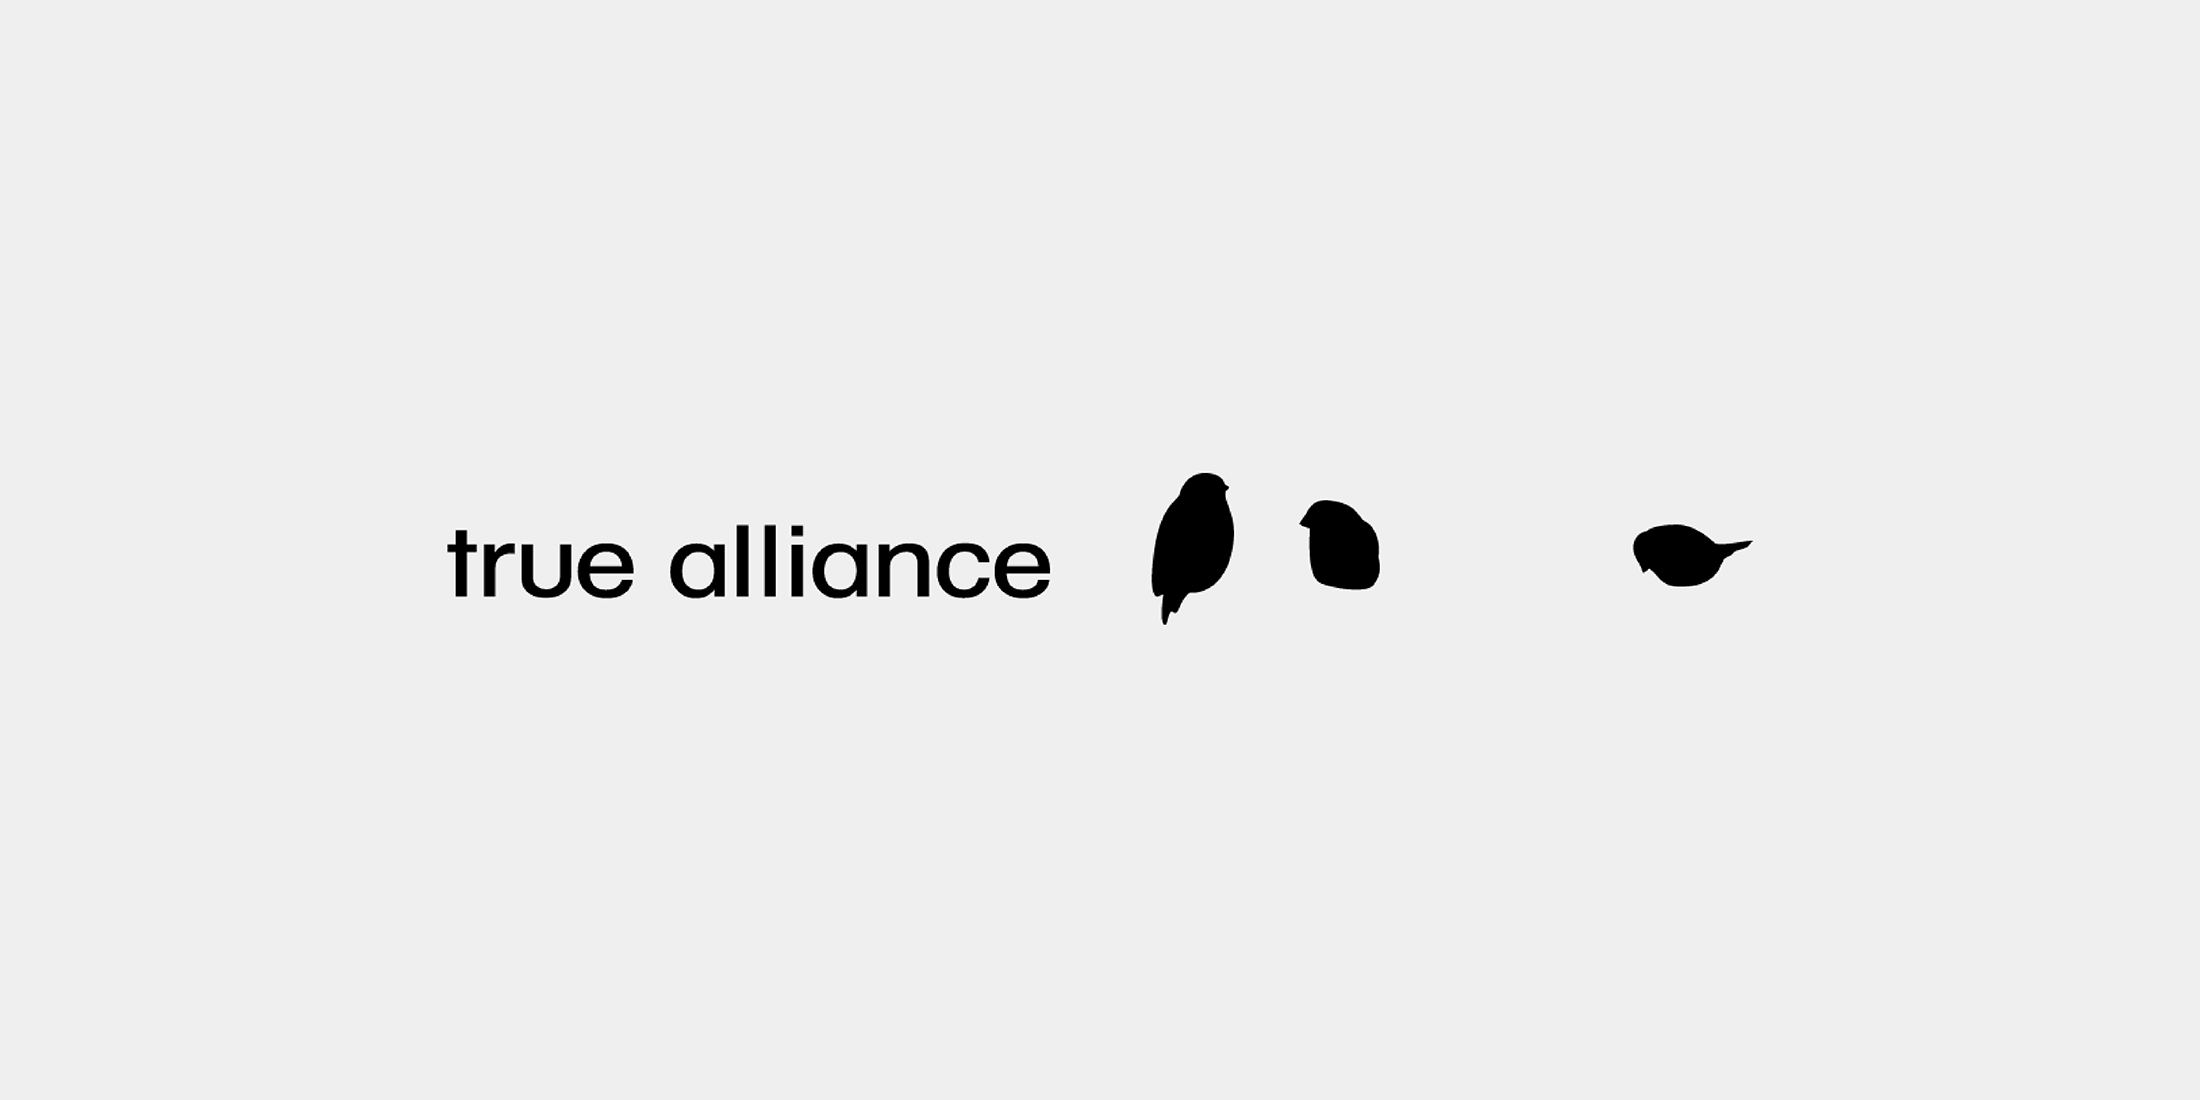 True alliance 02